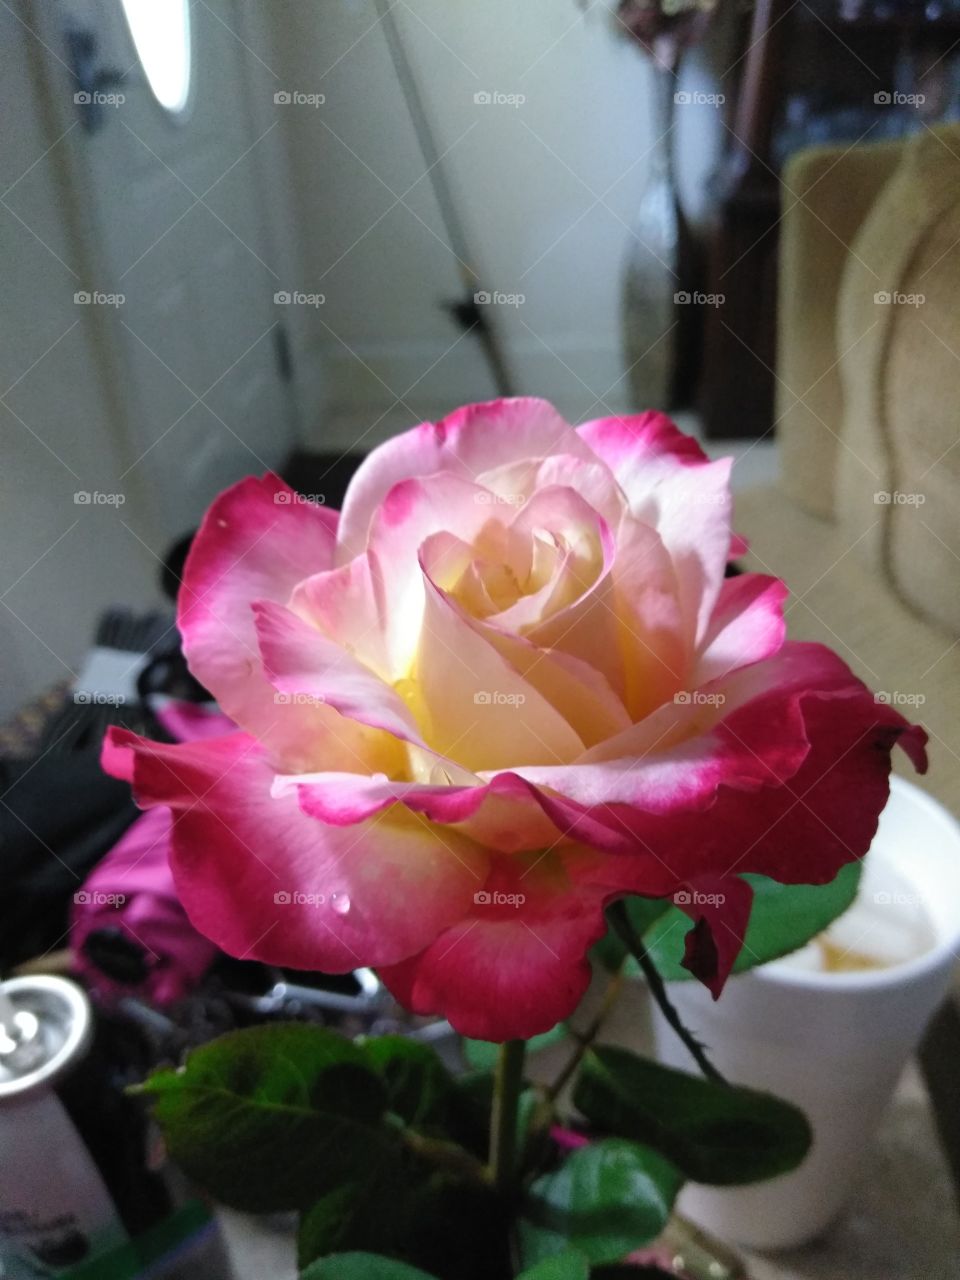 Double Delight Rose full bloom